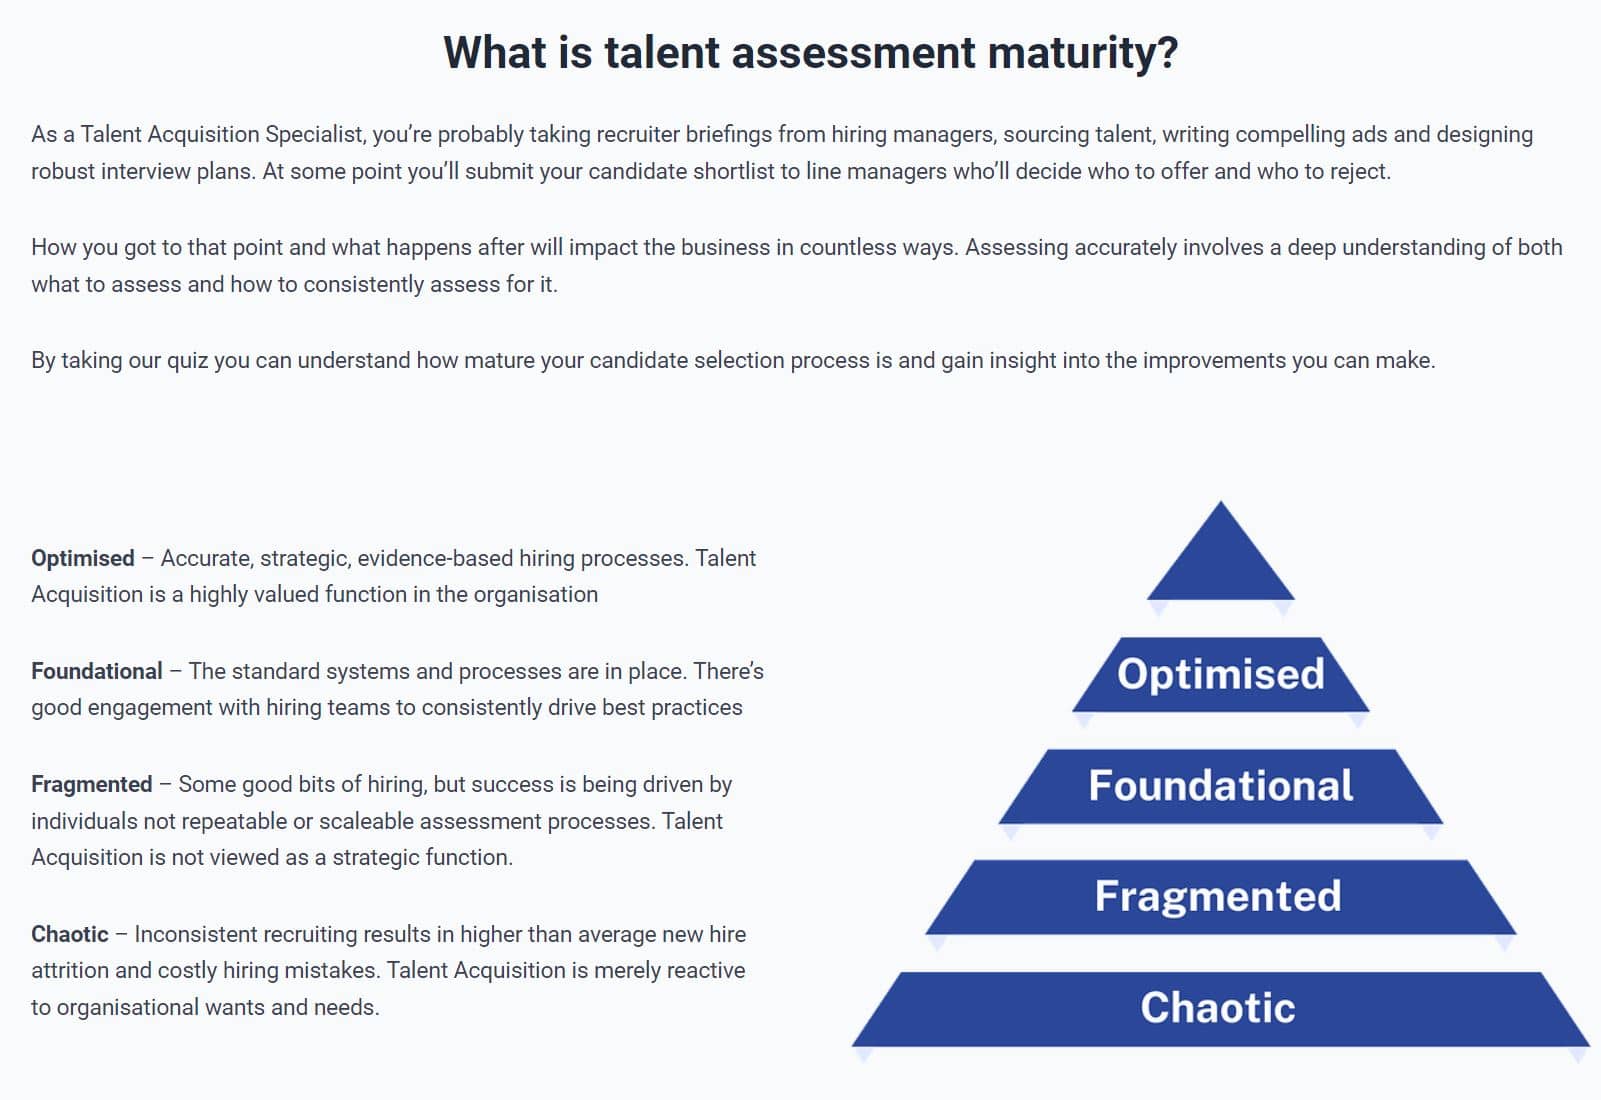 Hiring assessment maturity